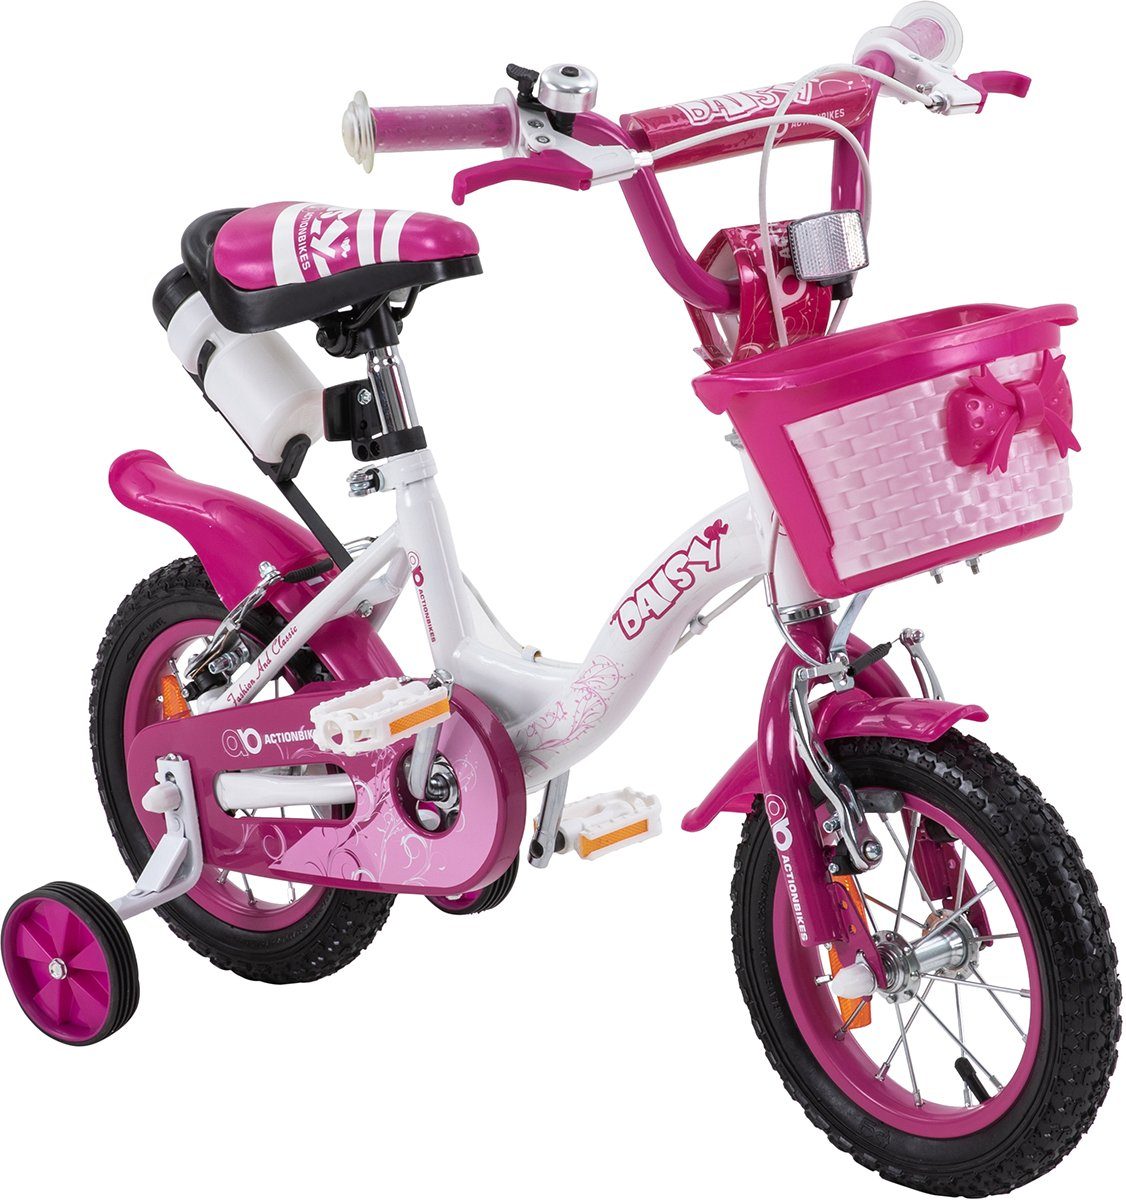 Günstige Kinderfahrräder kaufen » Kinderfahrräder SALE | OTTO